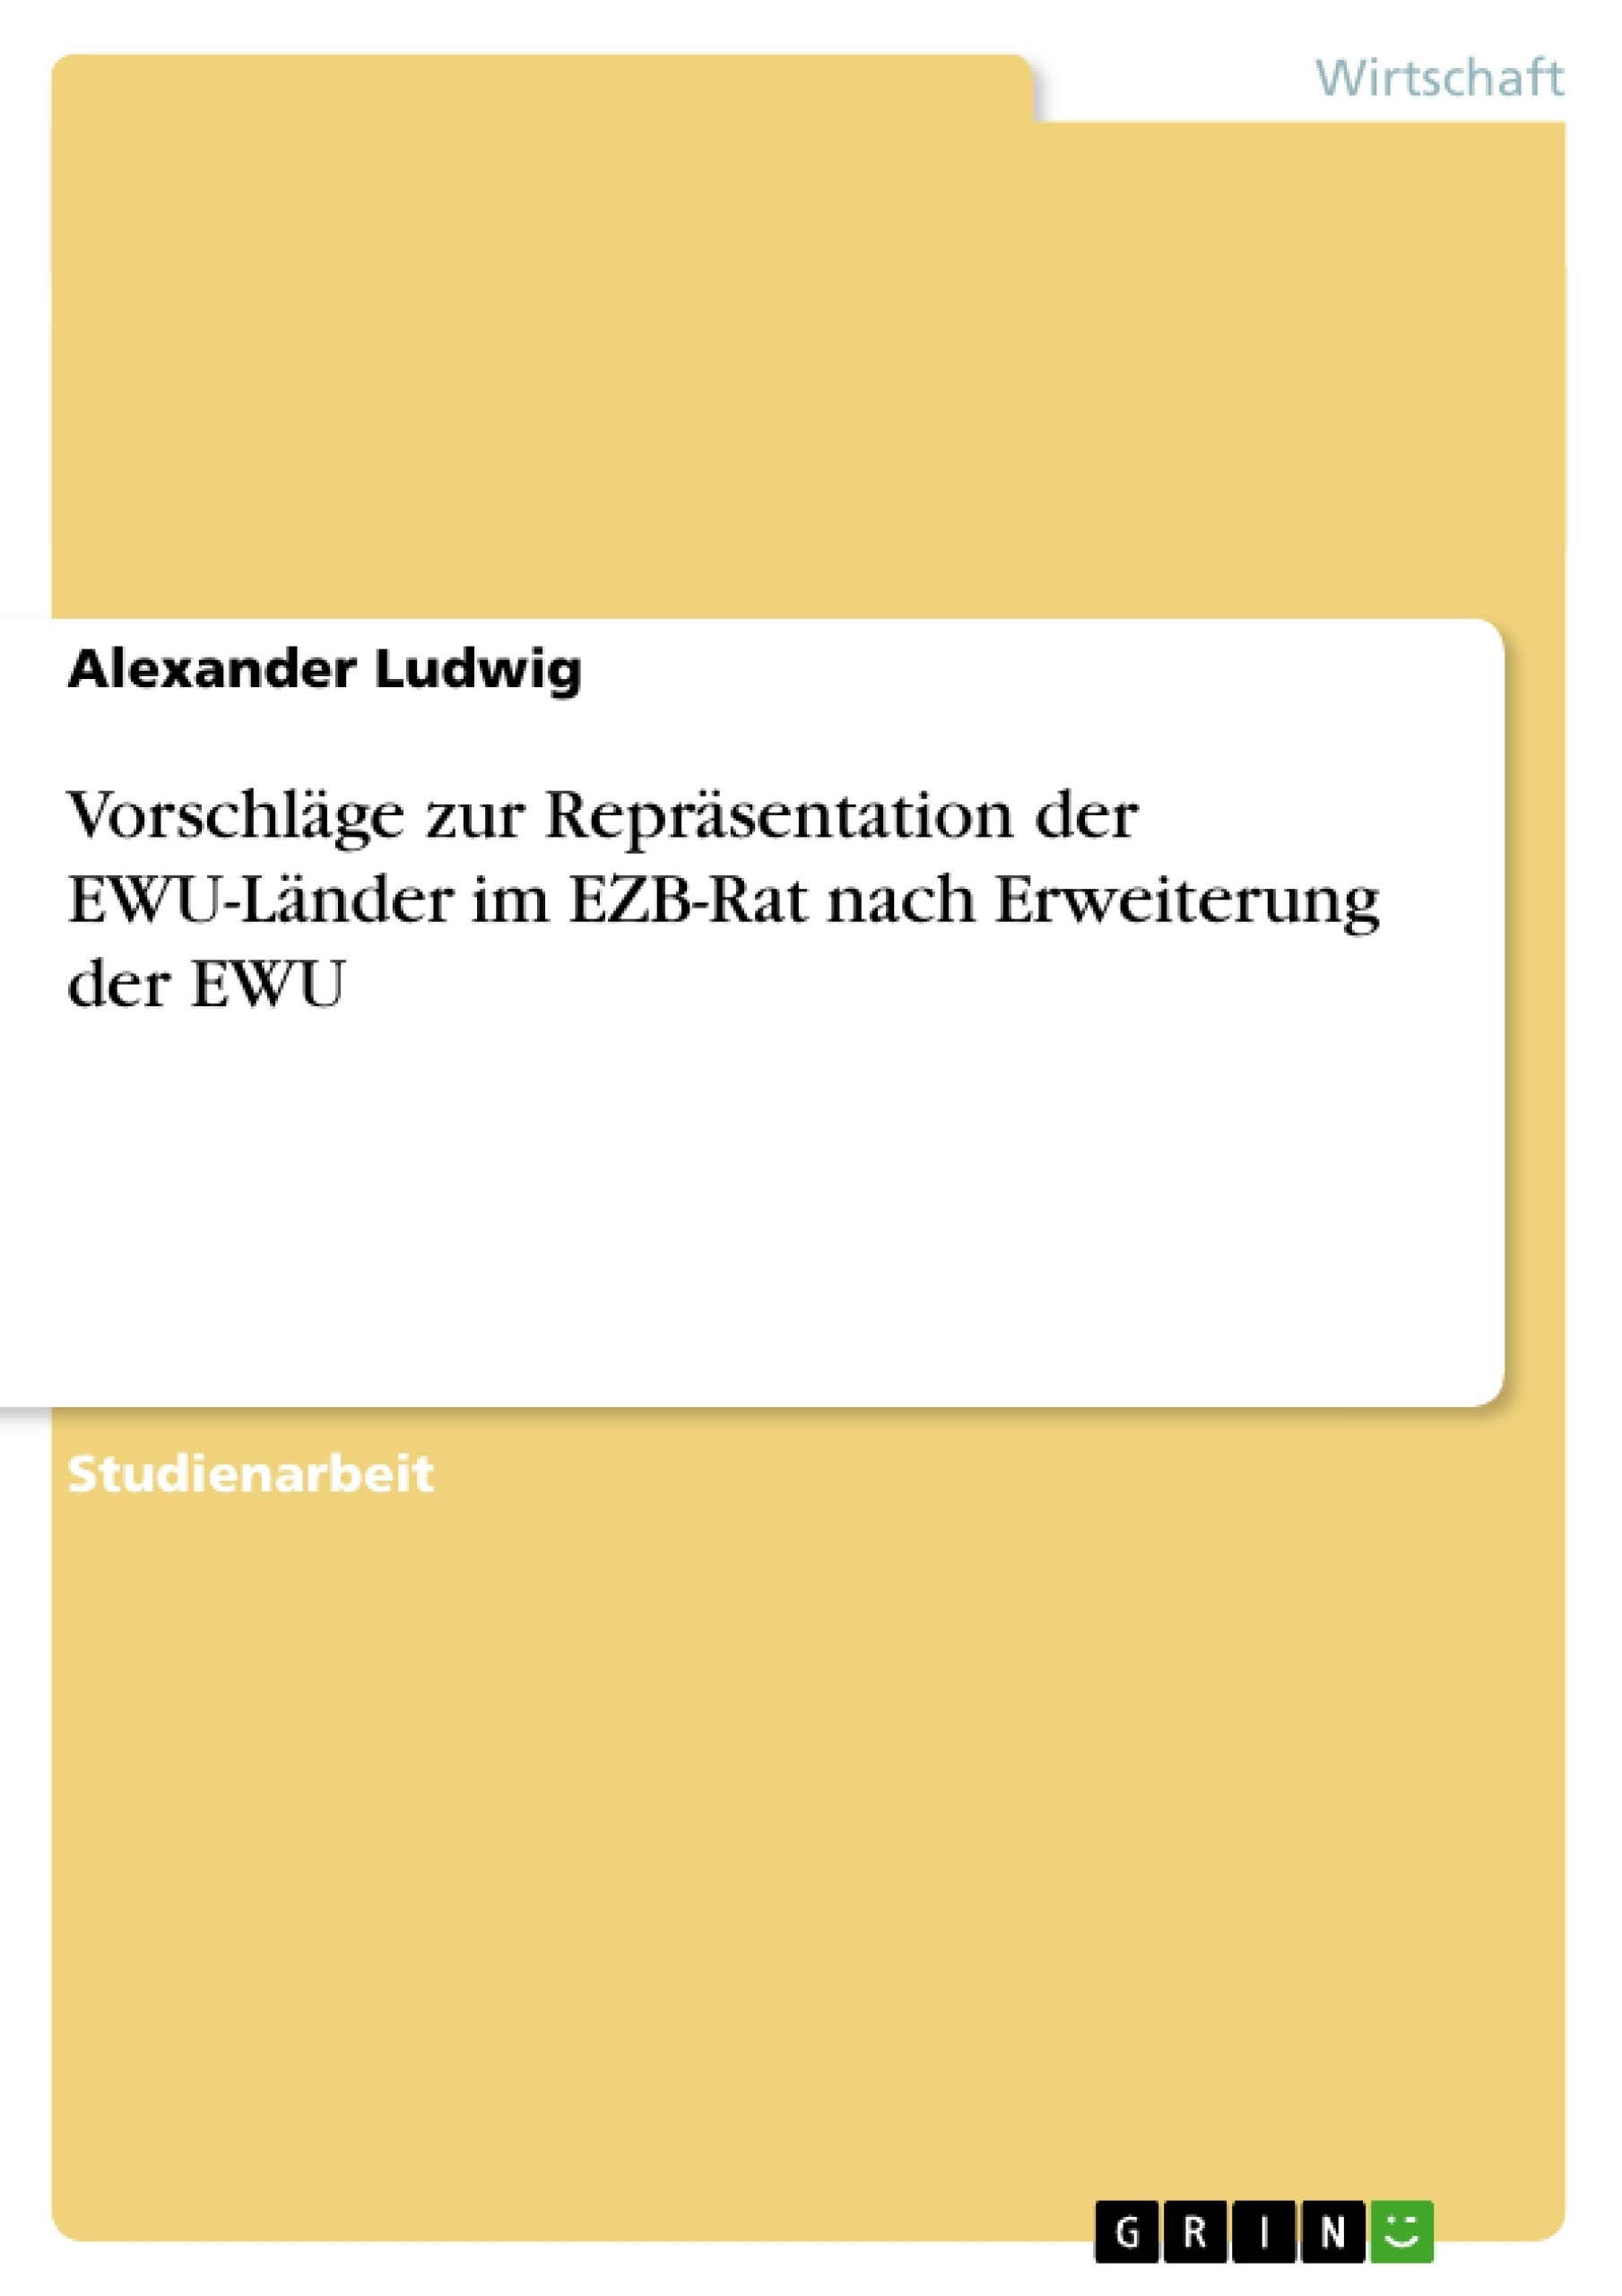 Titre: Vorschläge zur Repräsentation der EWU-Länder im EZB-Rat nach Erweiterung der EWU